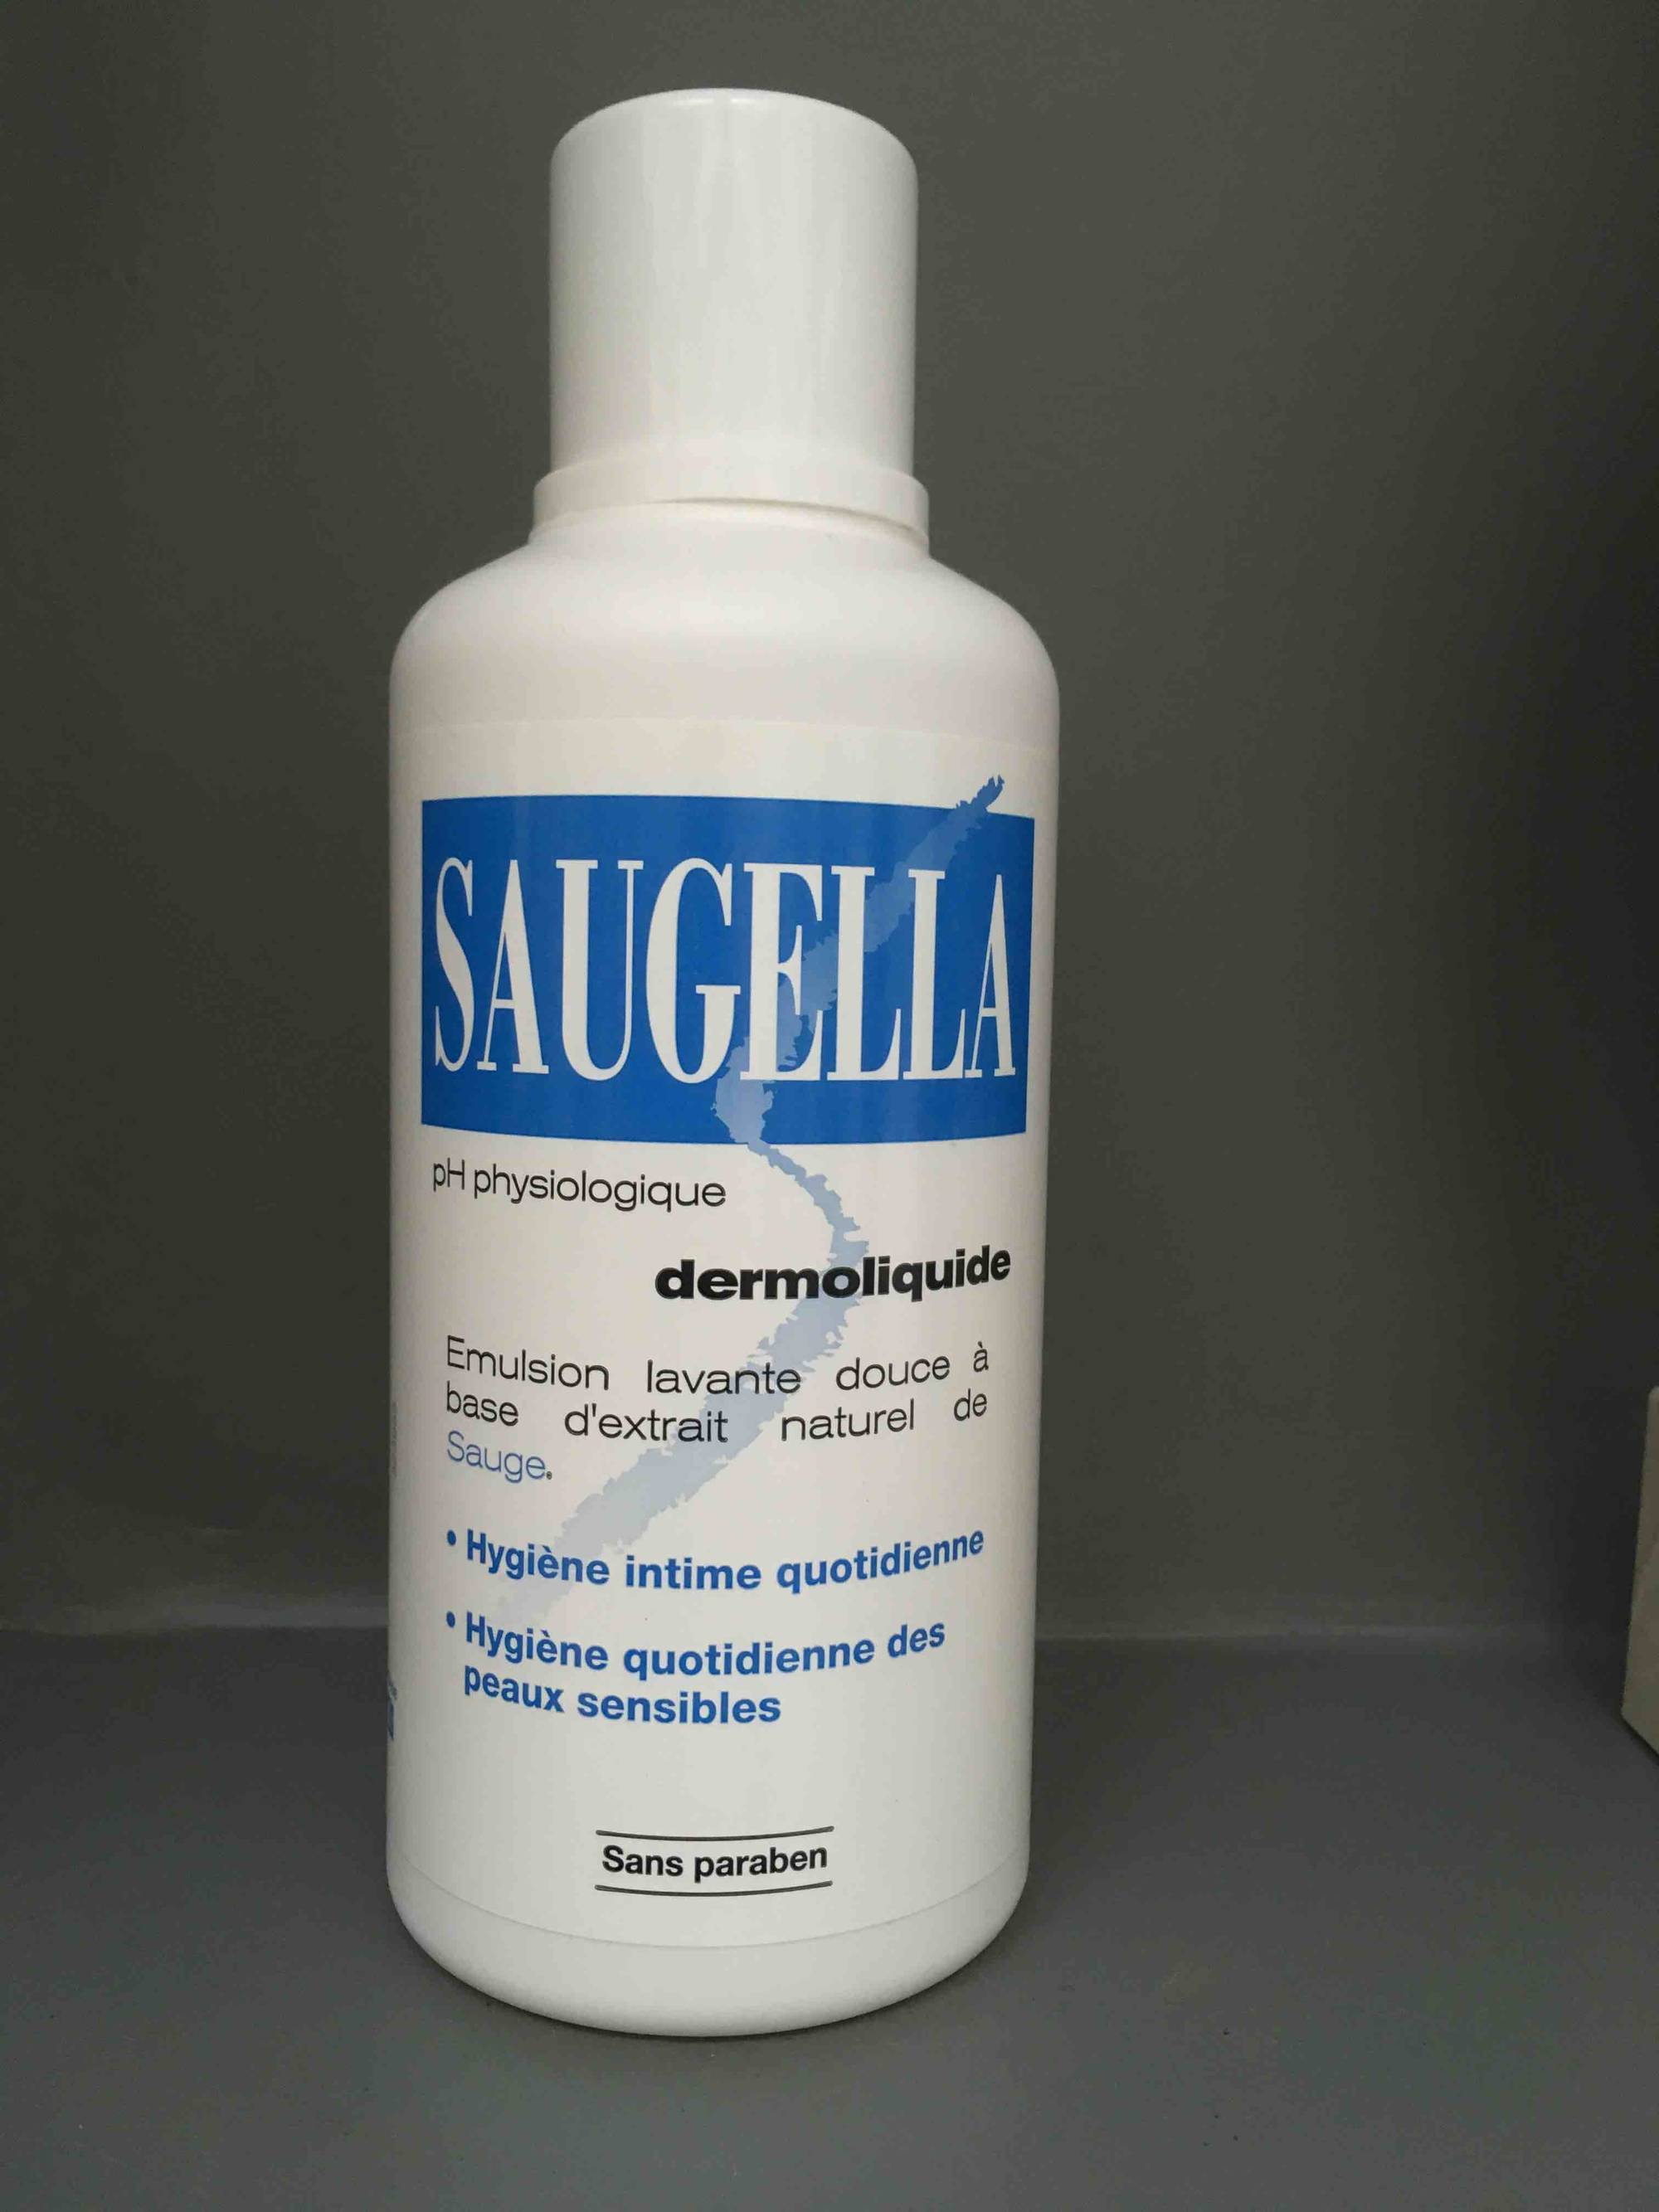 Crème allaitement – Saugella - produit